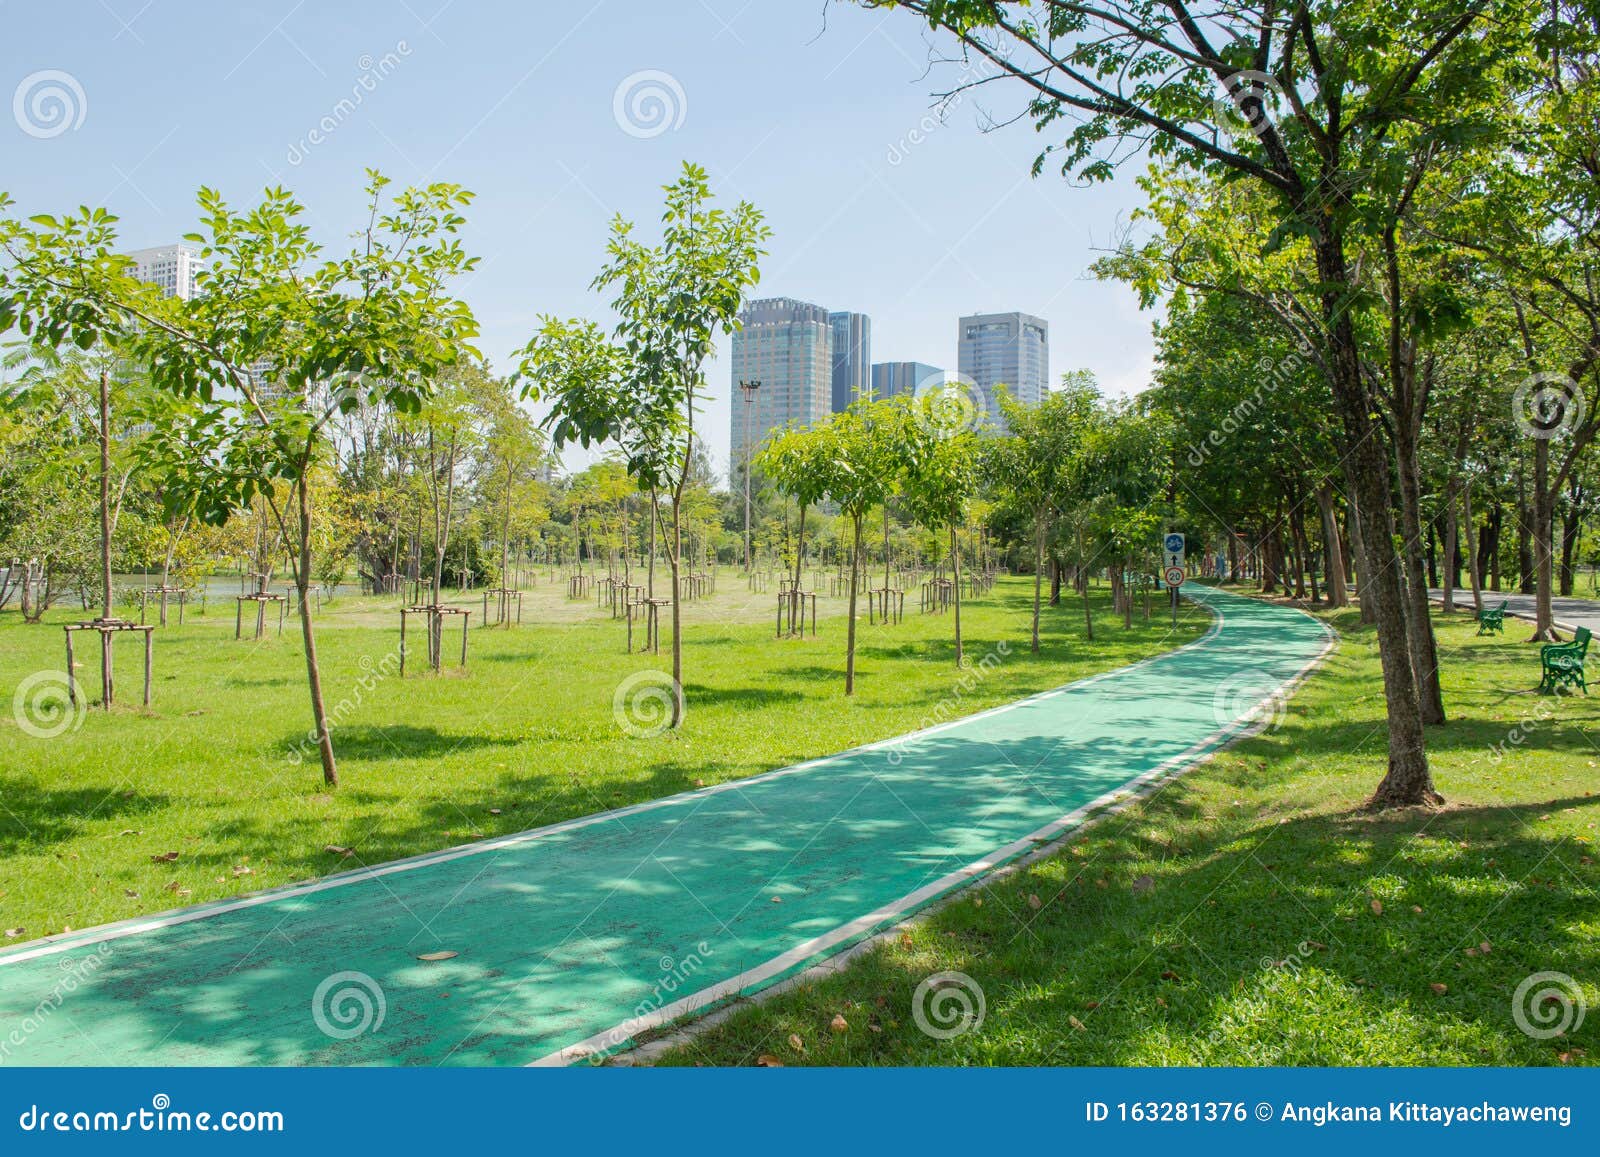 绿草草地与城市建筑背景公园树木并排自行车道库存照片 图片包括有